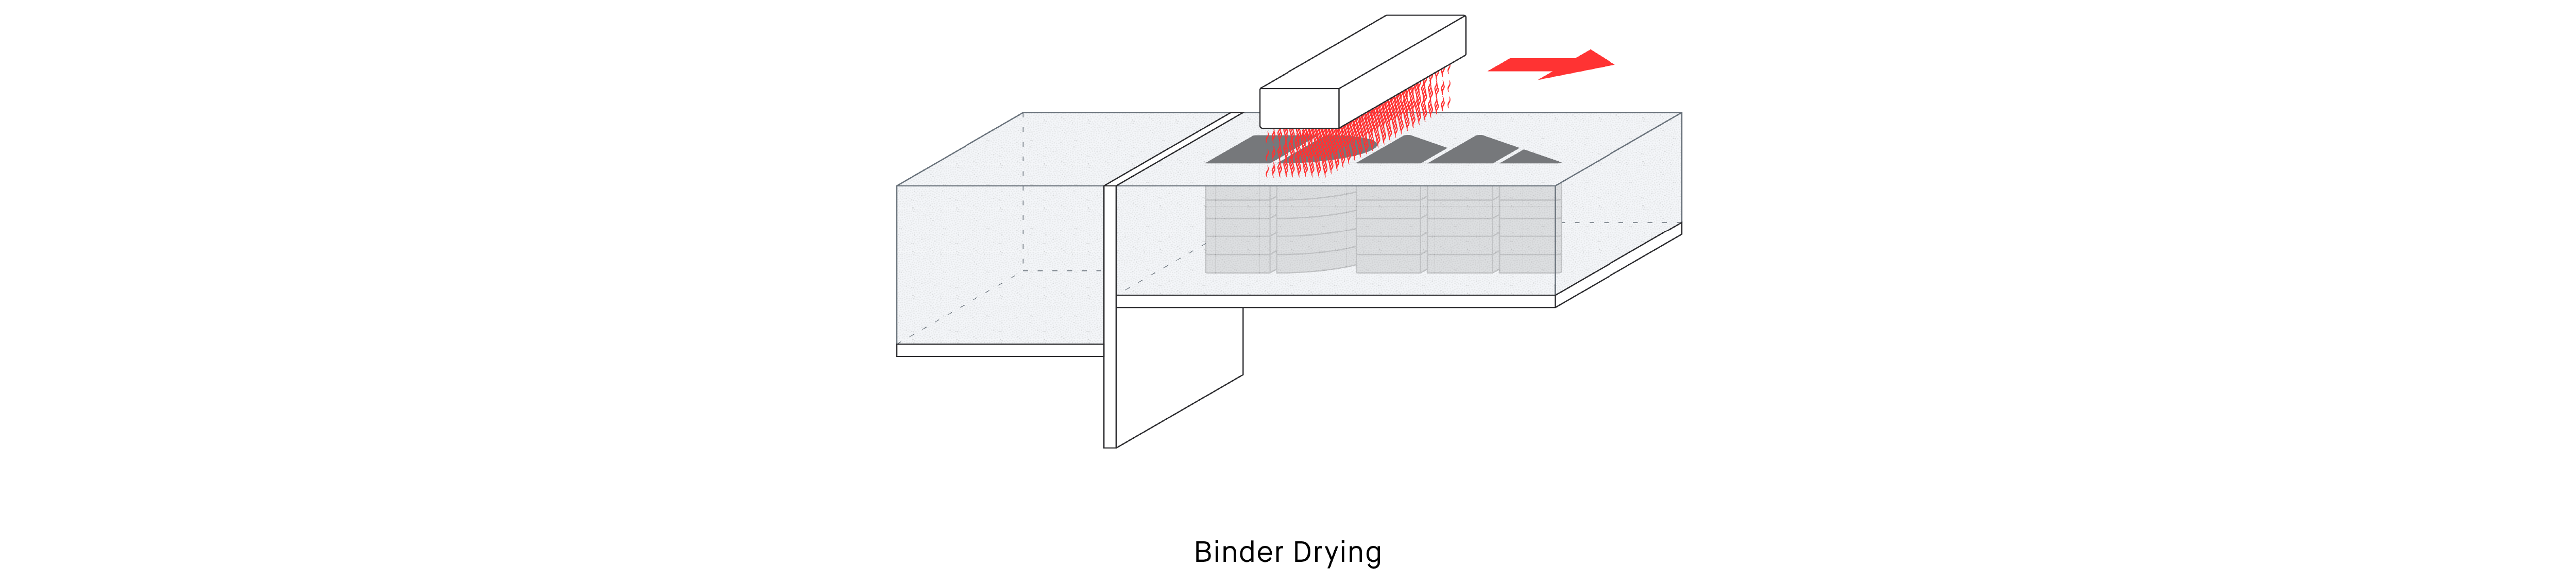 04 Binder Drying